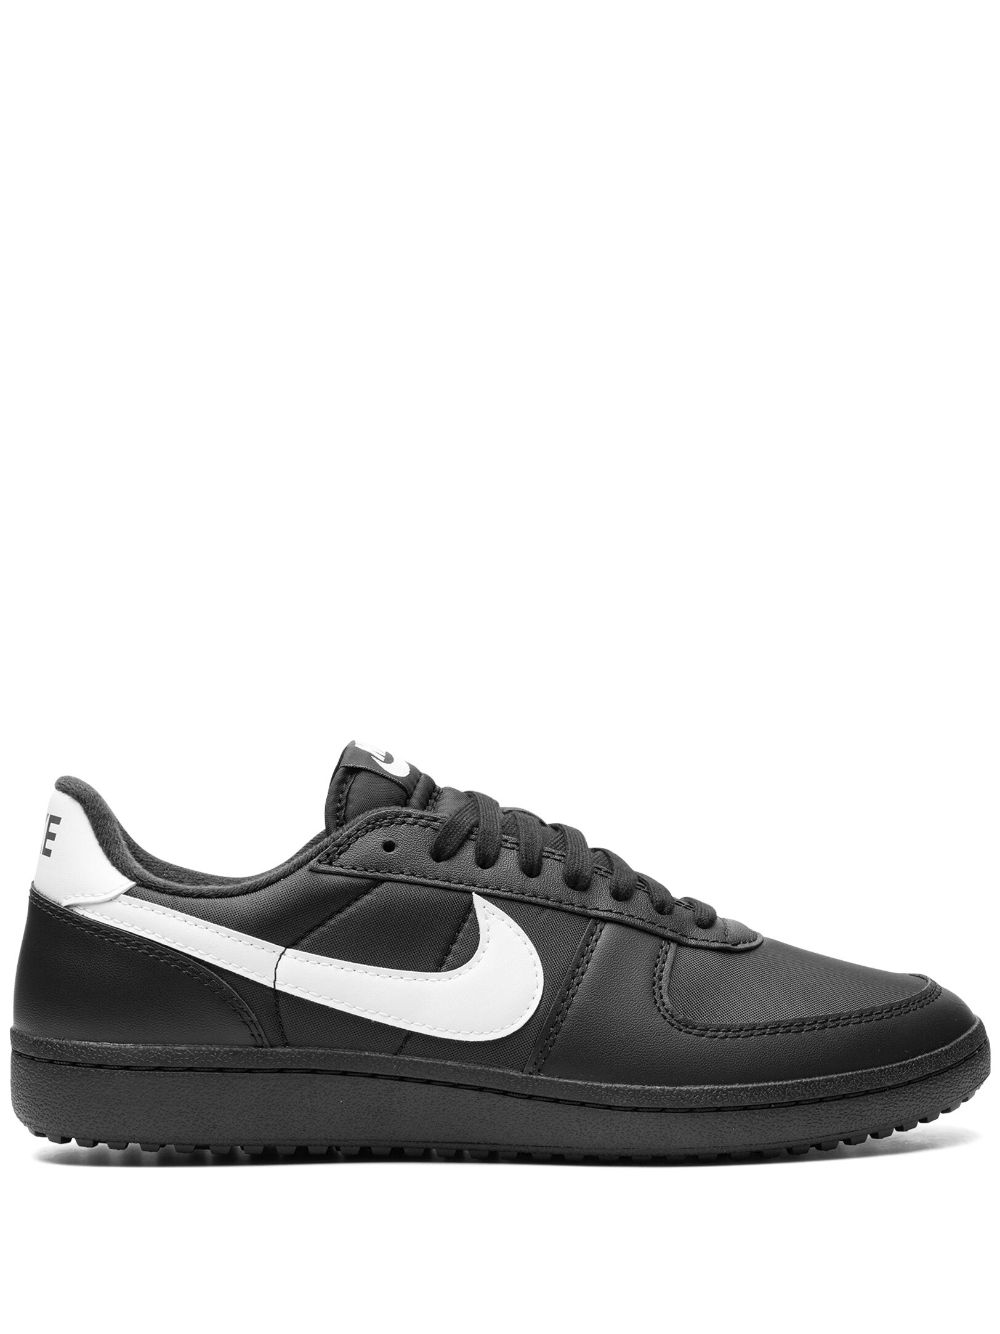 Nike Field General '82 "black/white" Sneakers